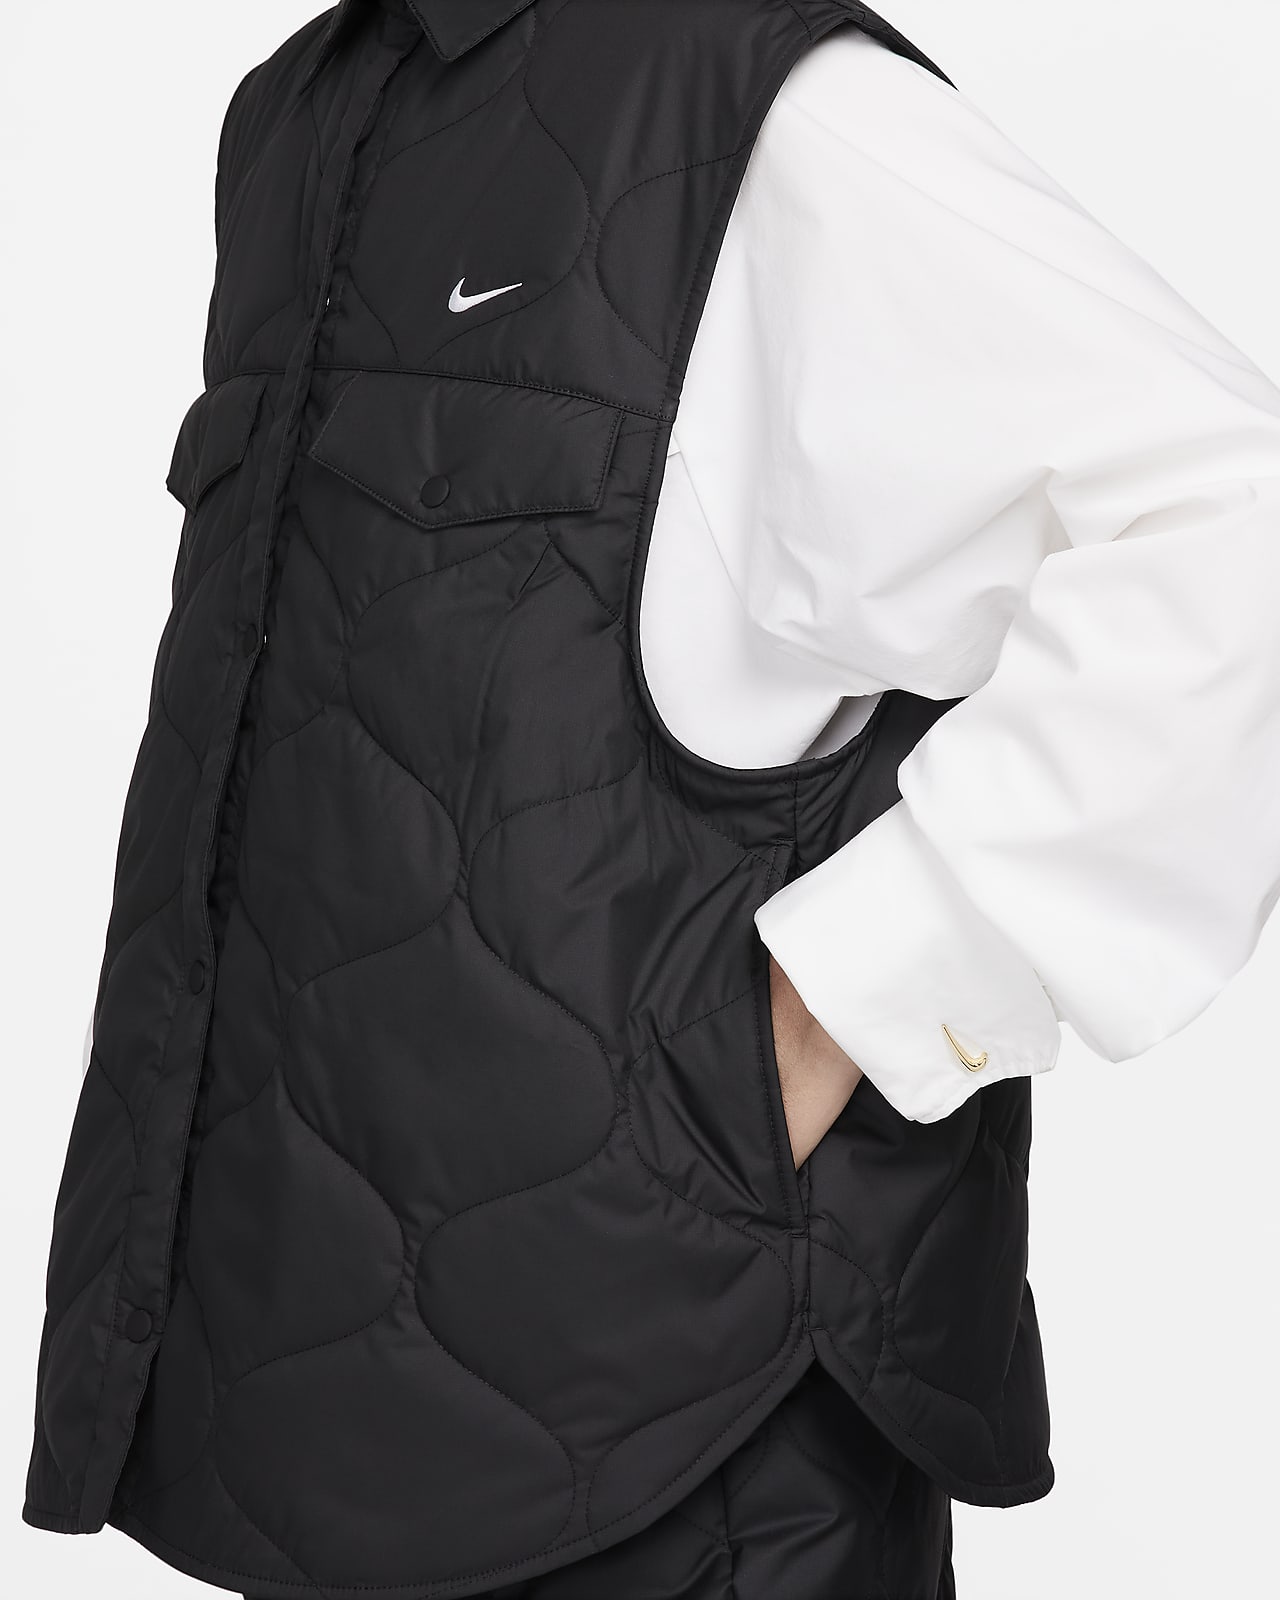 Essential Sportswear Vest. Nike Women\'s